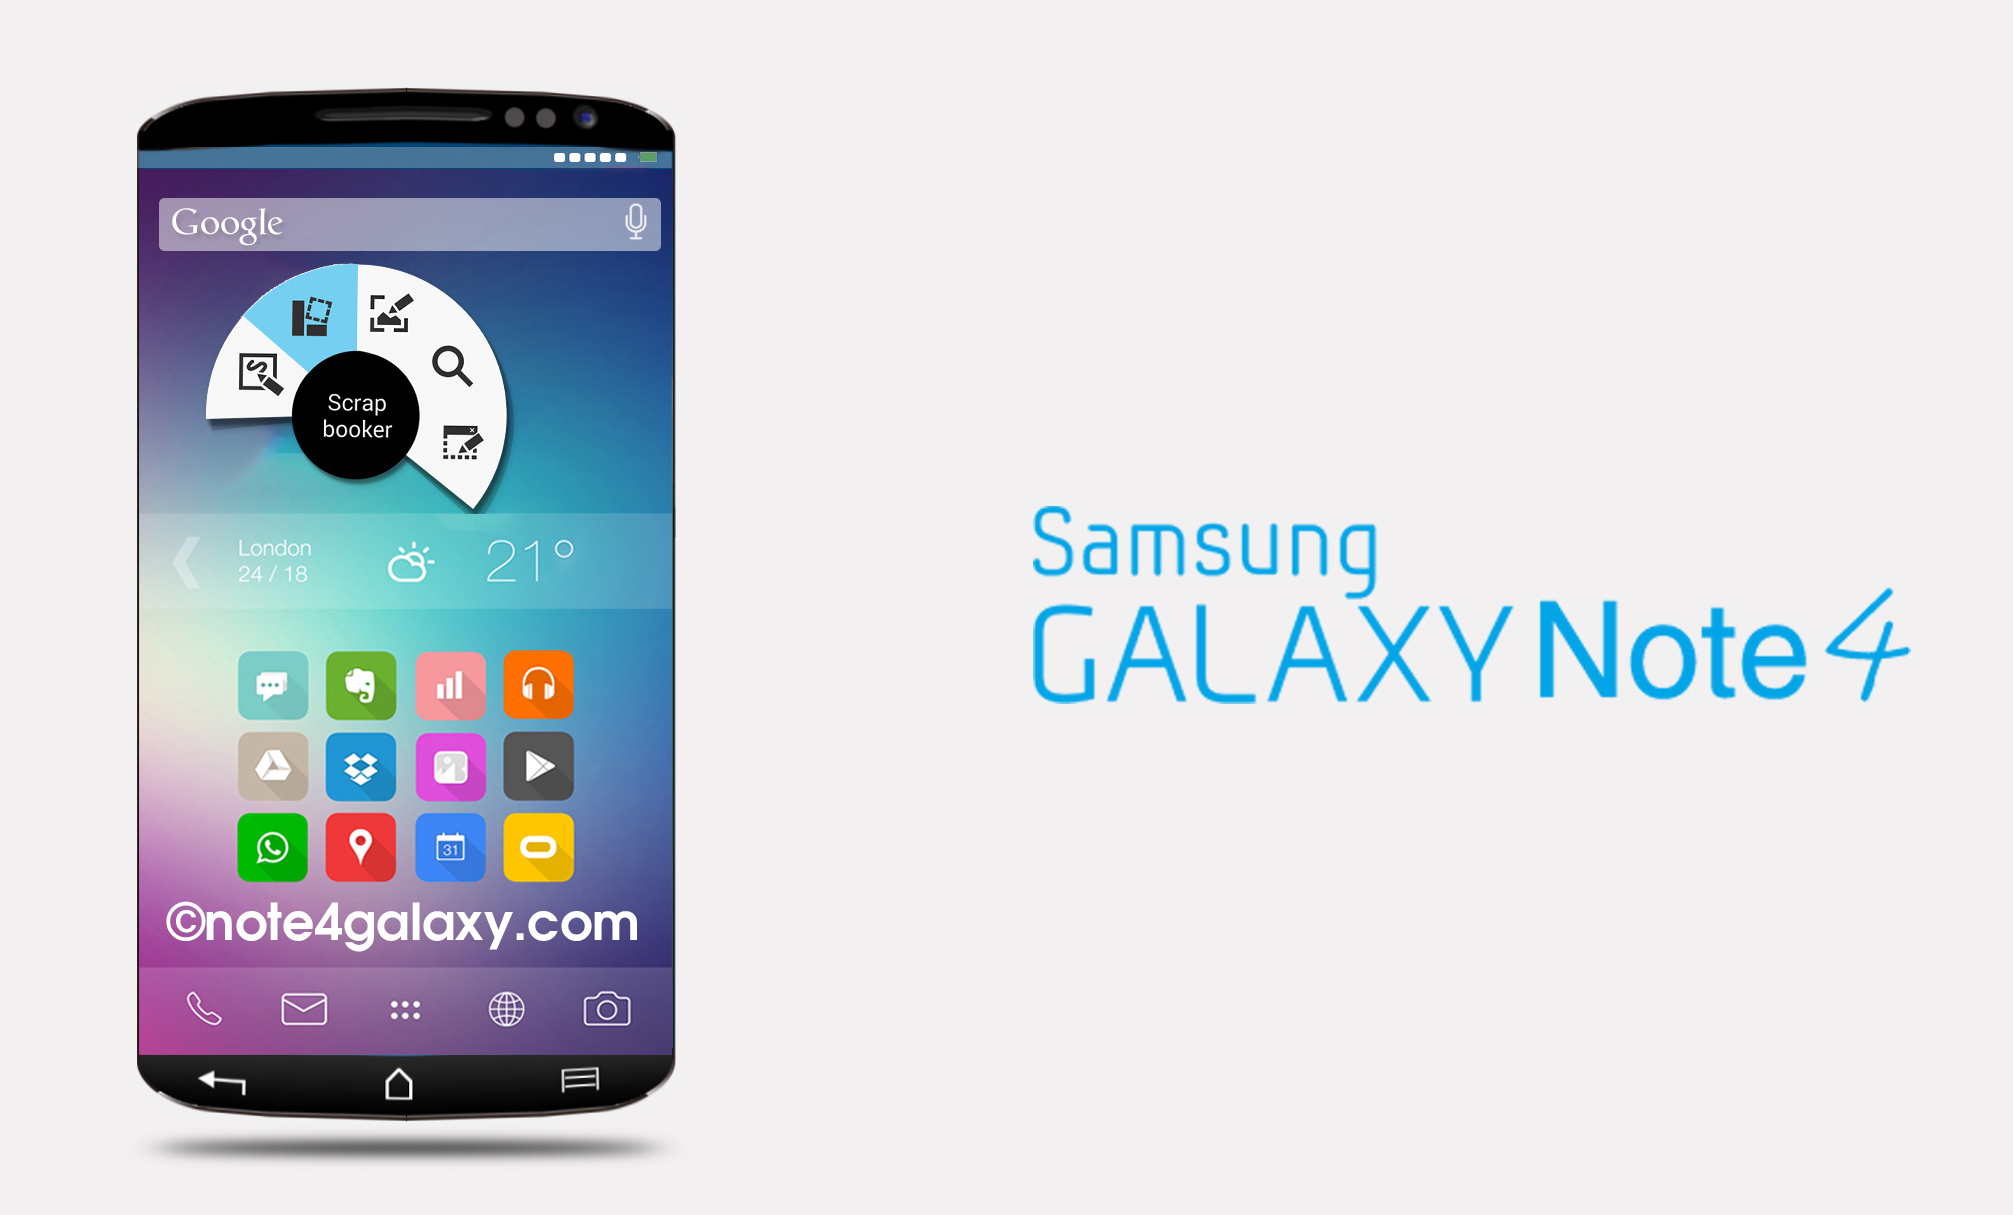 ลือ Samsung Galaxy Note 4 จะมาพร้อมจอ 5.7 นิ้ว 2560 x 1440 สุดคมชัด